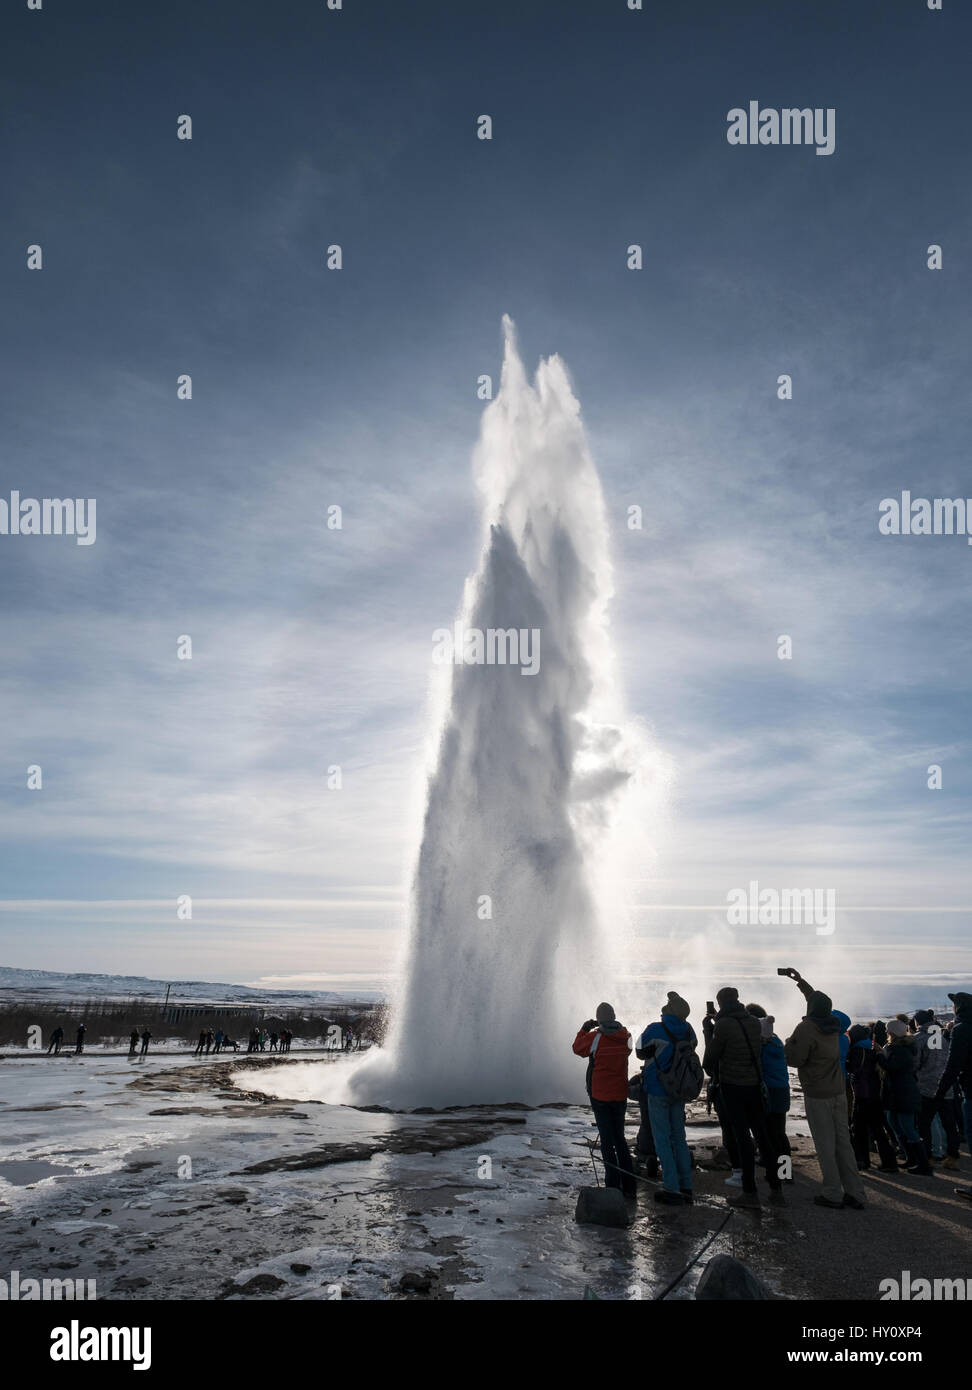 STROKKUR, ISLANDE - 1 mar - Groupes d'observation touristique fontaine naturelle geyser en vacances à Strkkur, l'Islande le 1 mars, 2017 Banque D'Images